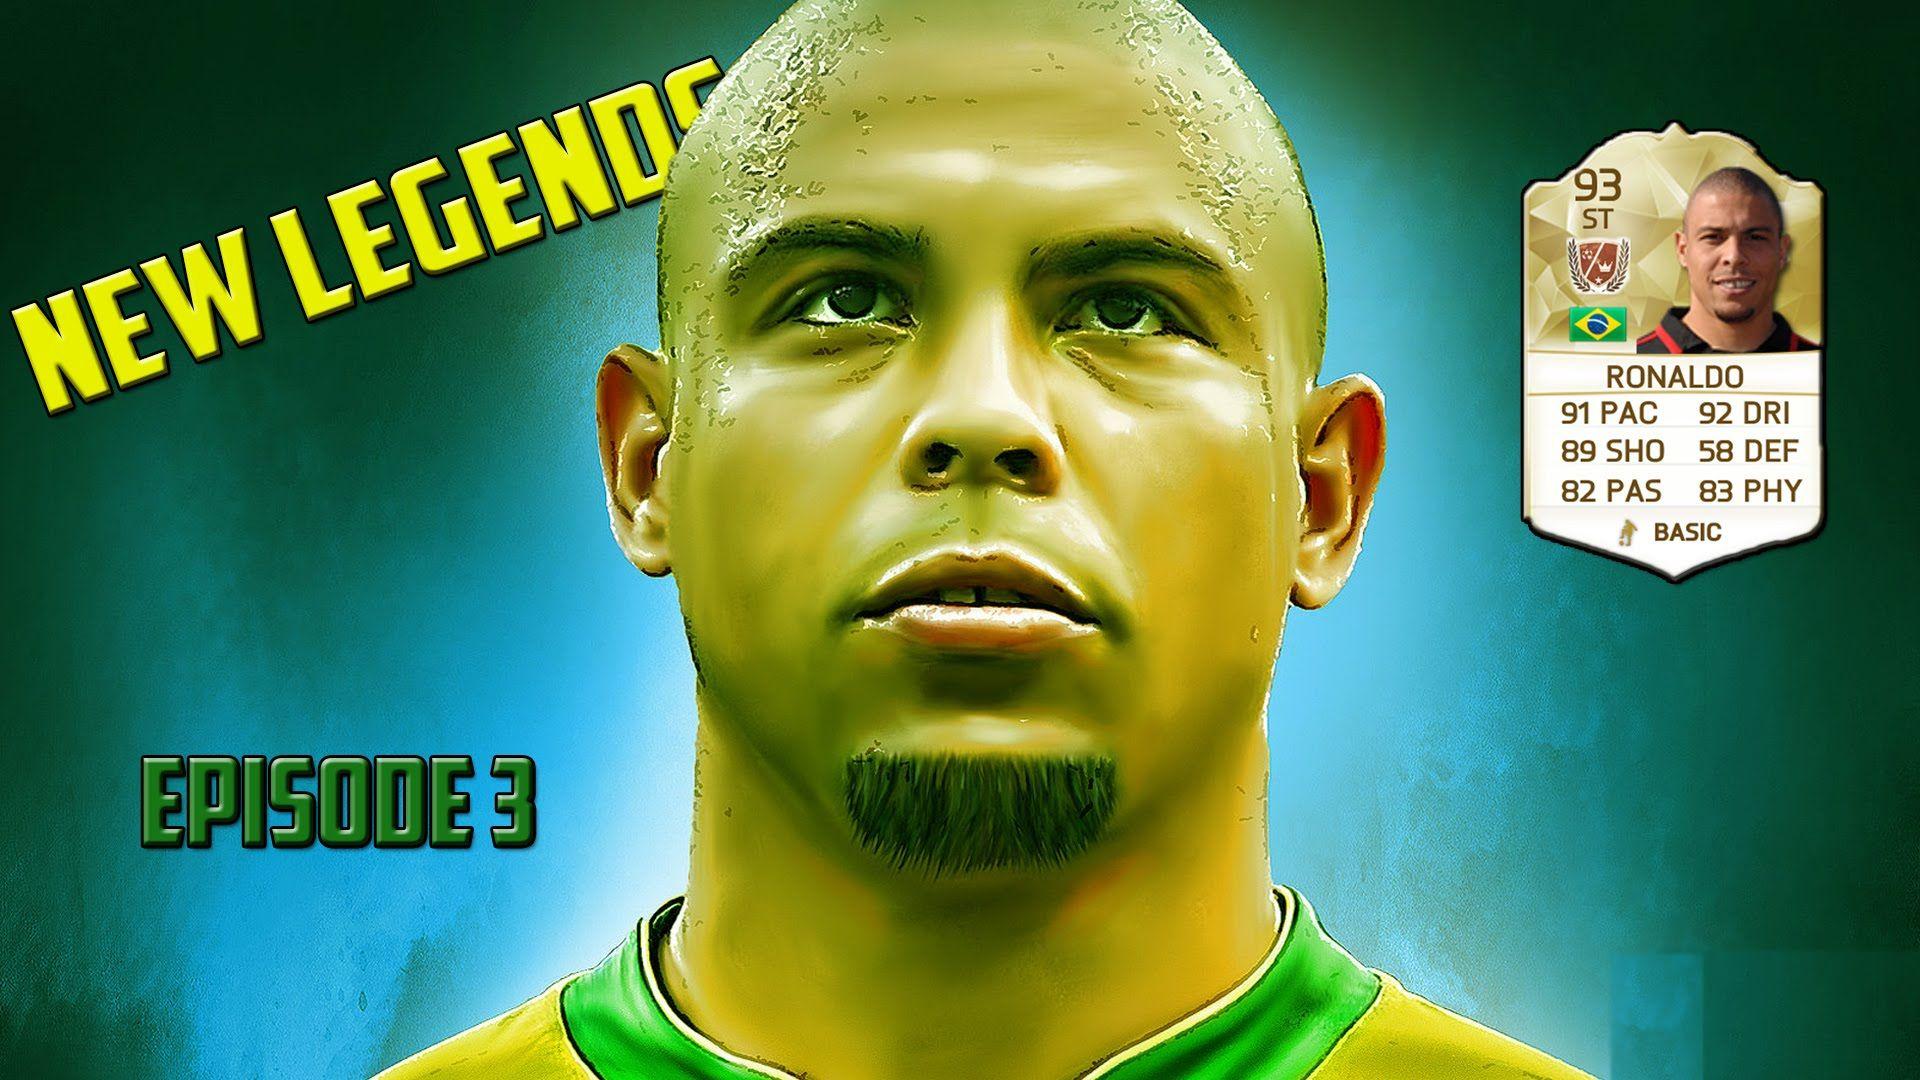 FIFA 16 Ultimate Team. New Legends. Ronaldo Luis Nazário de Lima